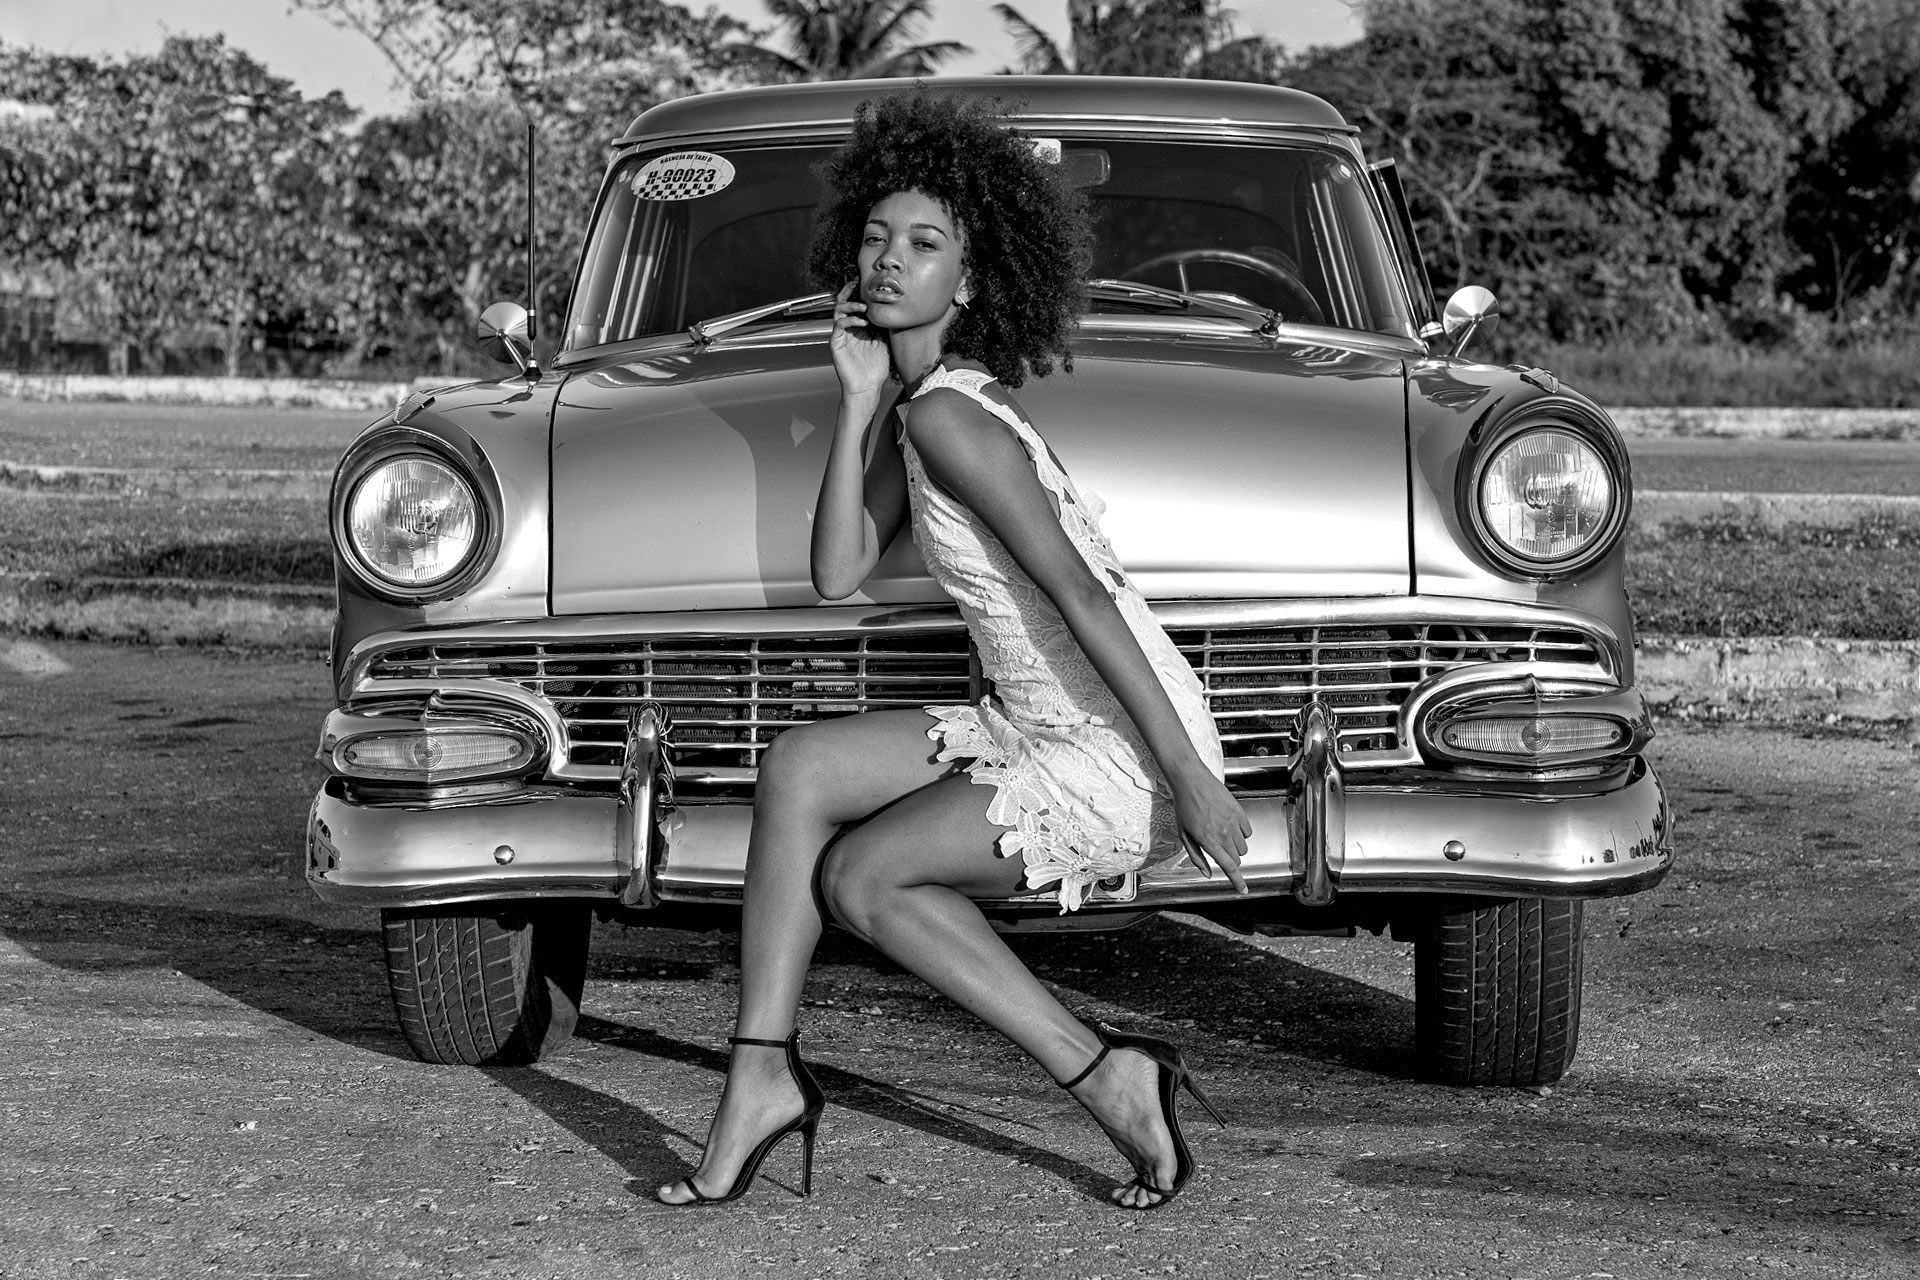 Oldtimer und Fotomodell fotografiert auf einer Fotoreise in Kuba